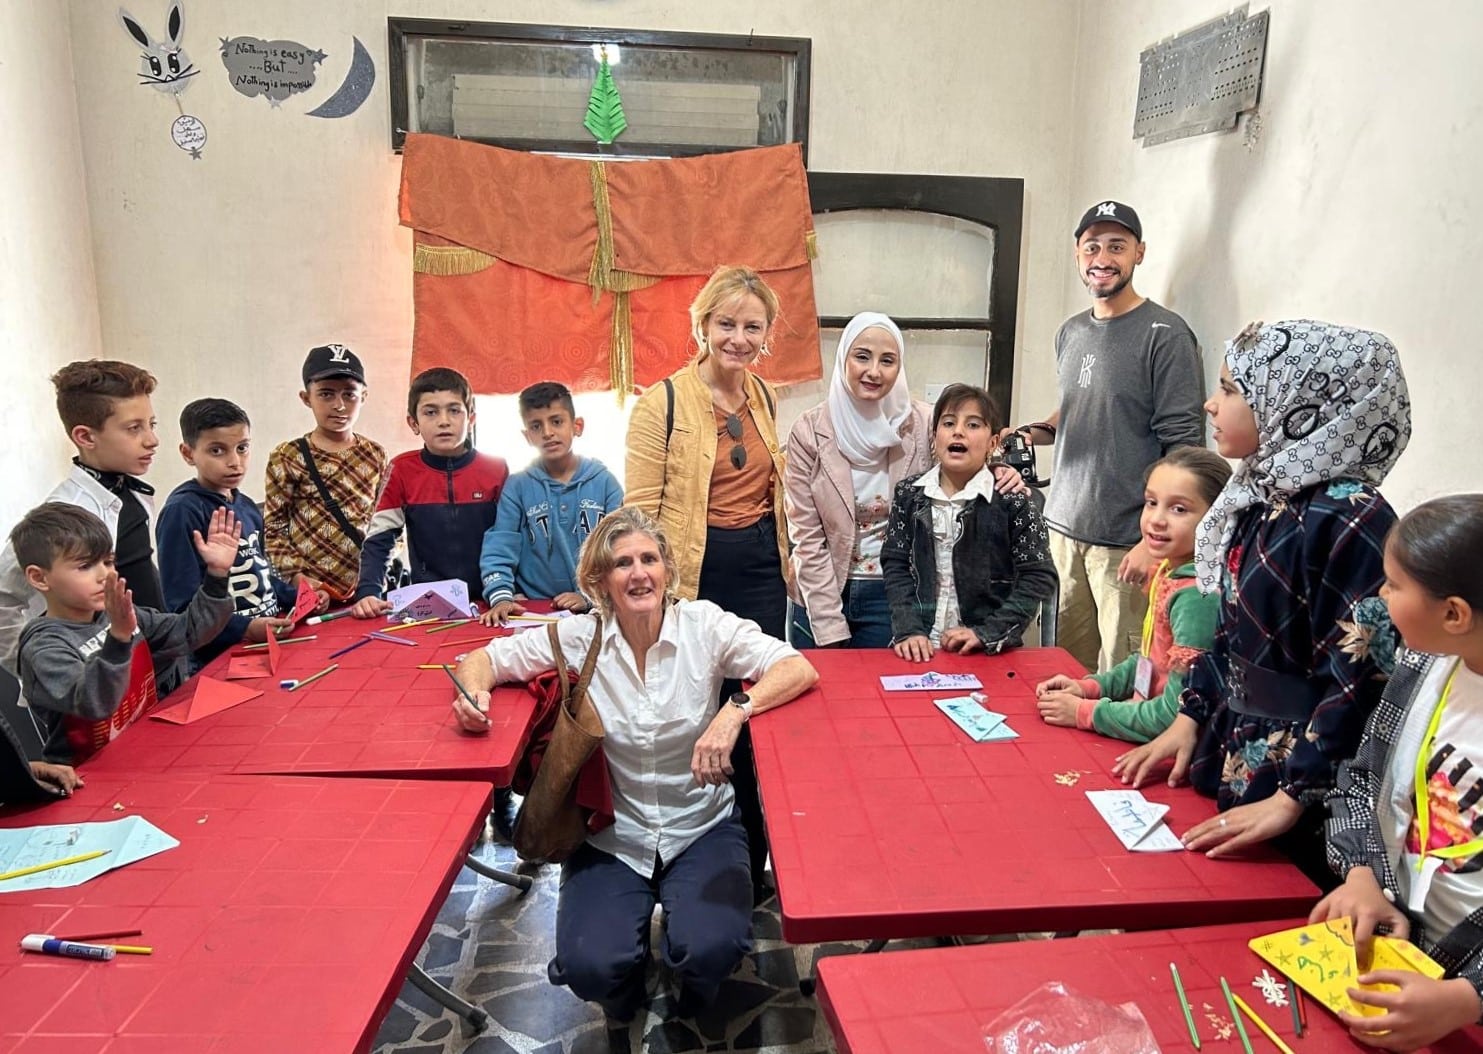 Ana e Gabriella insieme alla gente e ai bambini di Aleppo.